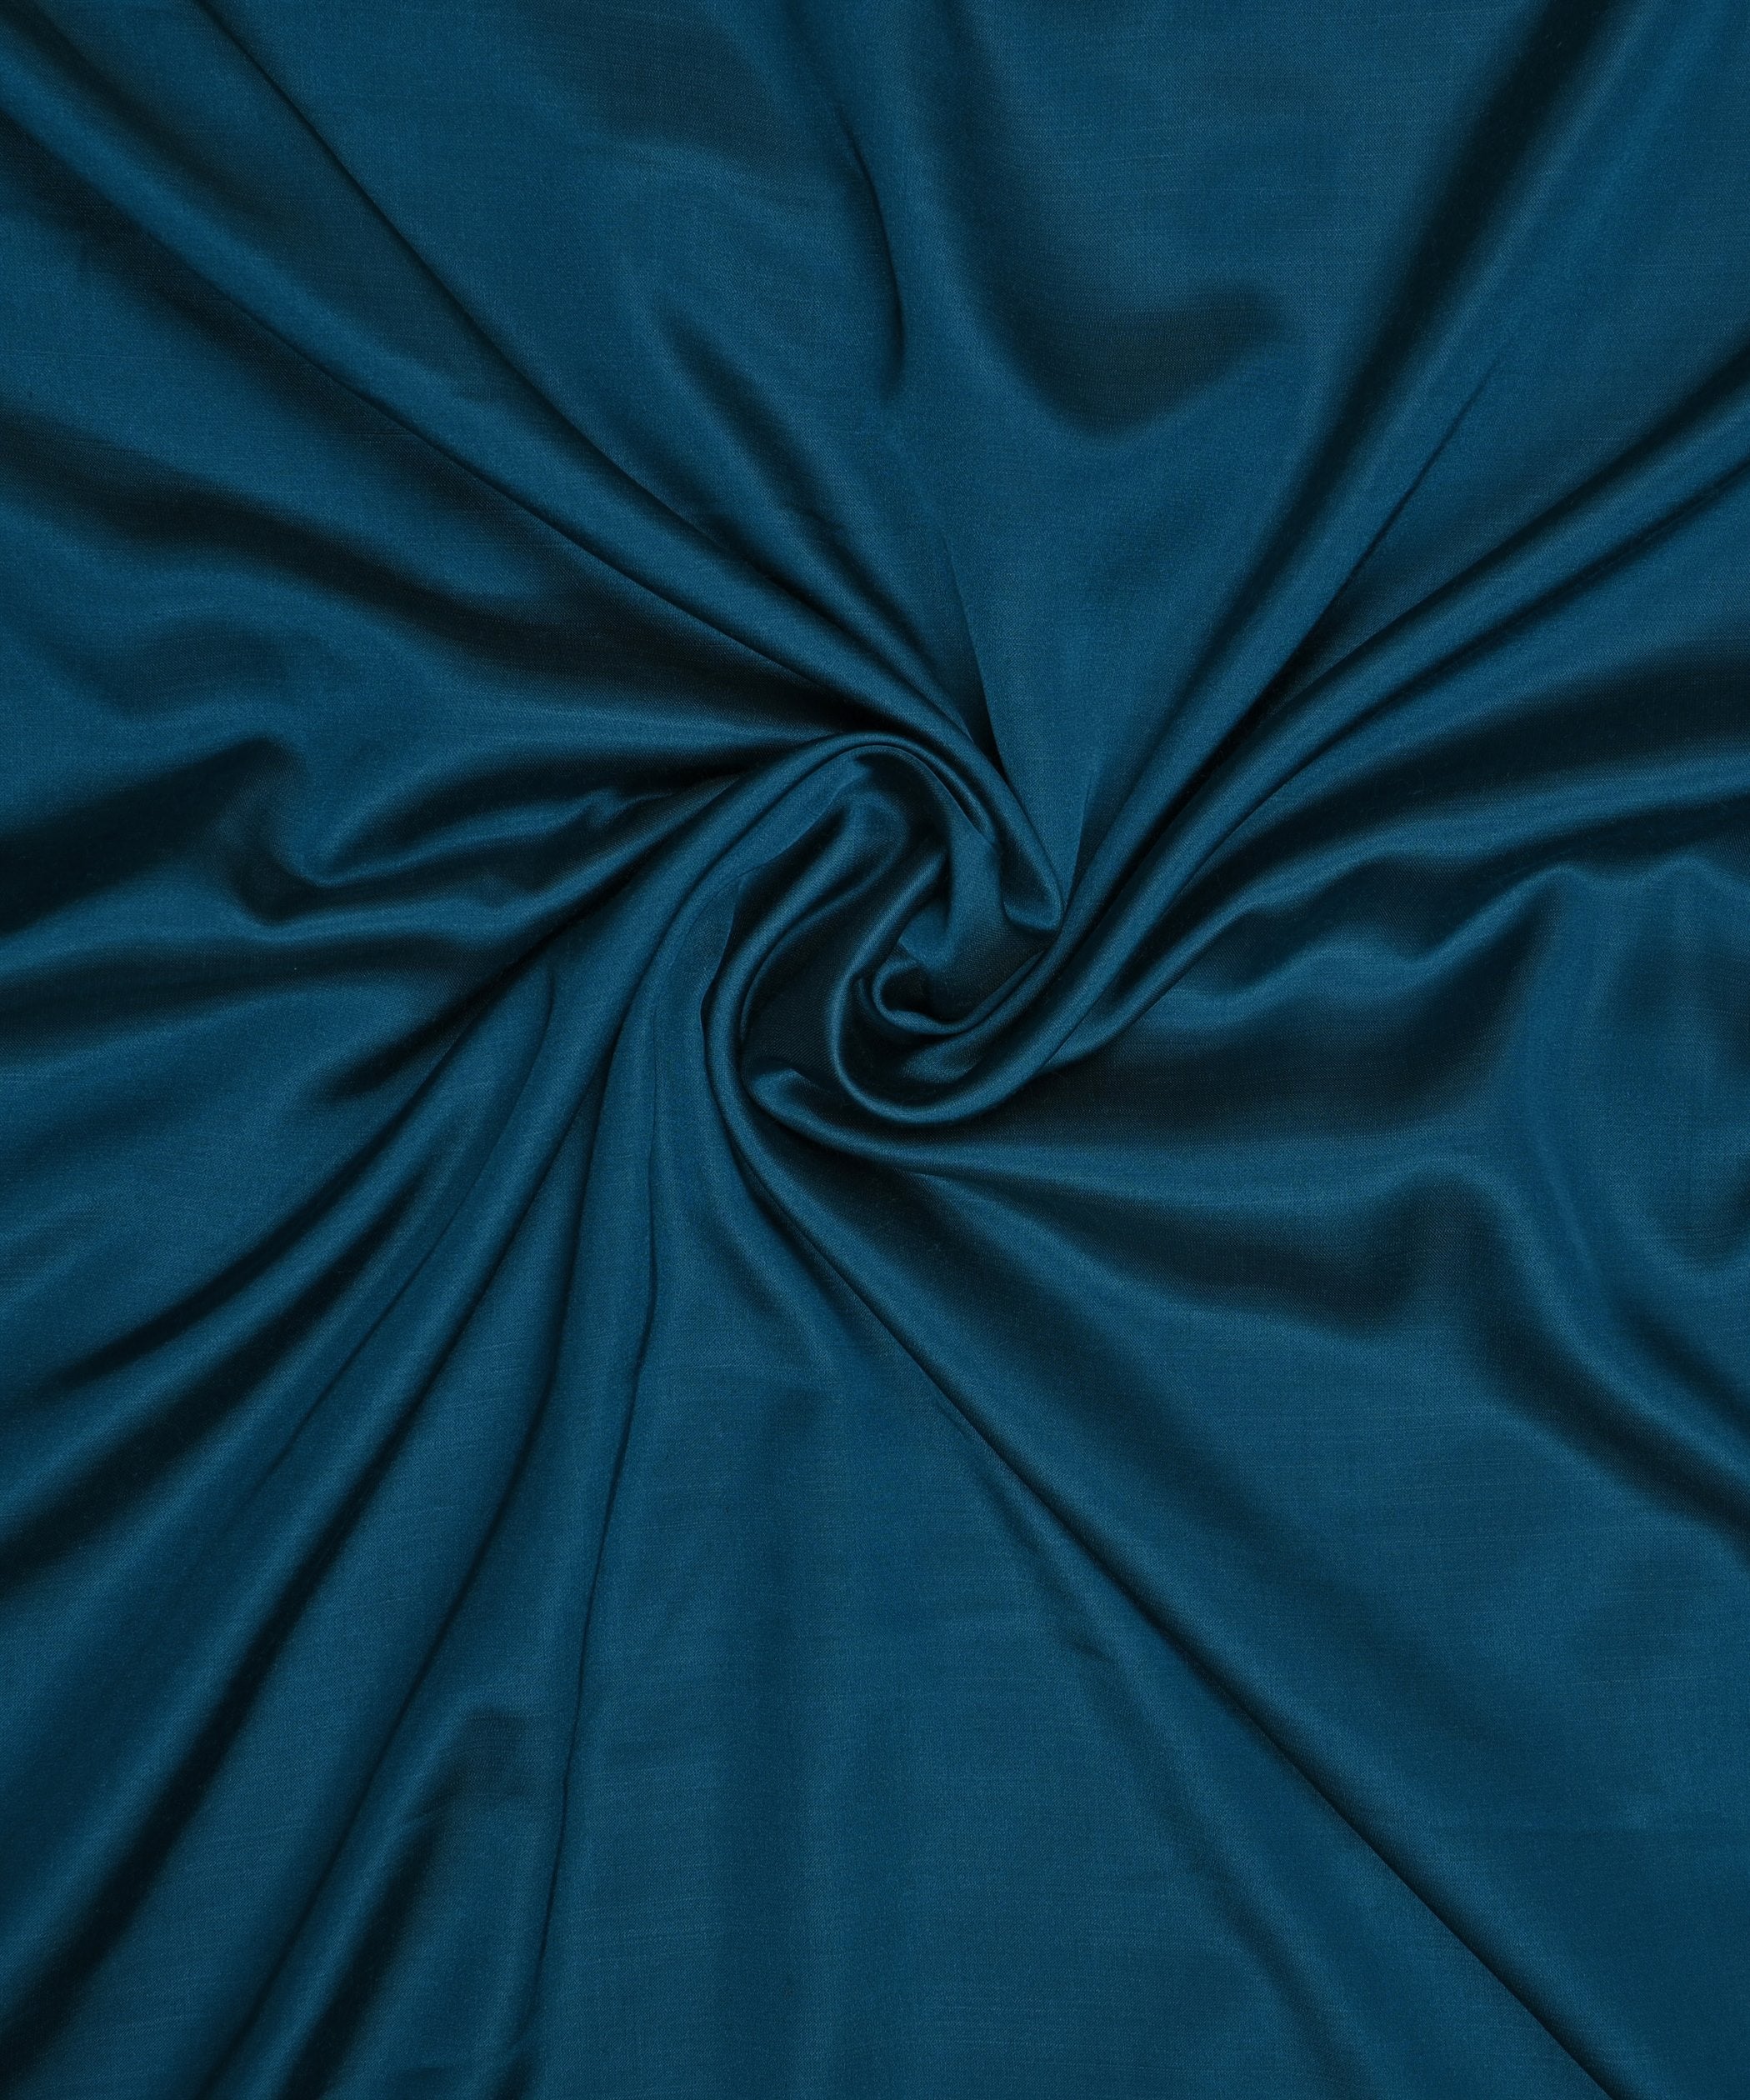 Teal Blue Plain Dyed Modal Satin Fabric